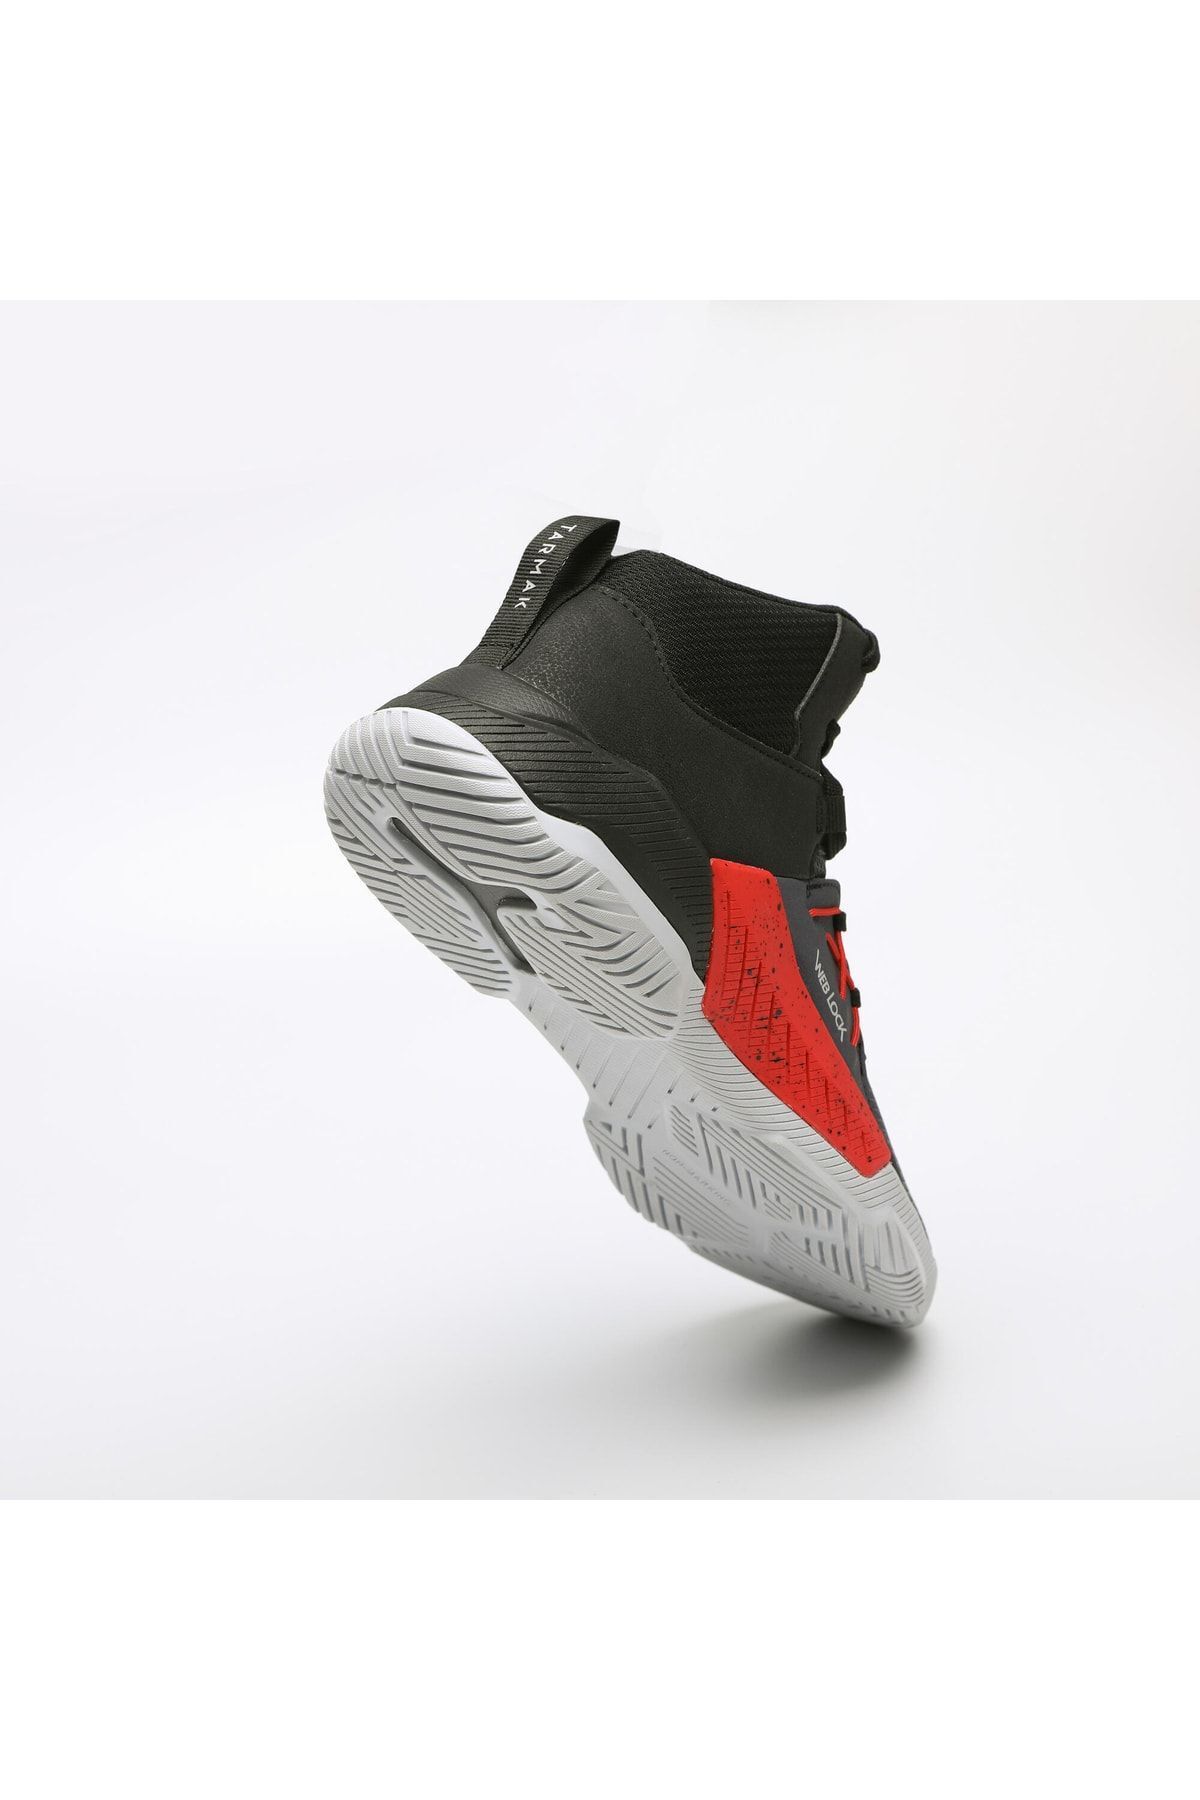 Decathlon - Basketbol Ayakkabısı Yetişkin Basketbol Ayakkabısı Boğazlı Ayakkabı Protect 120